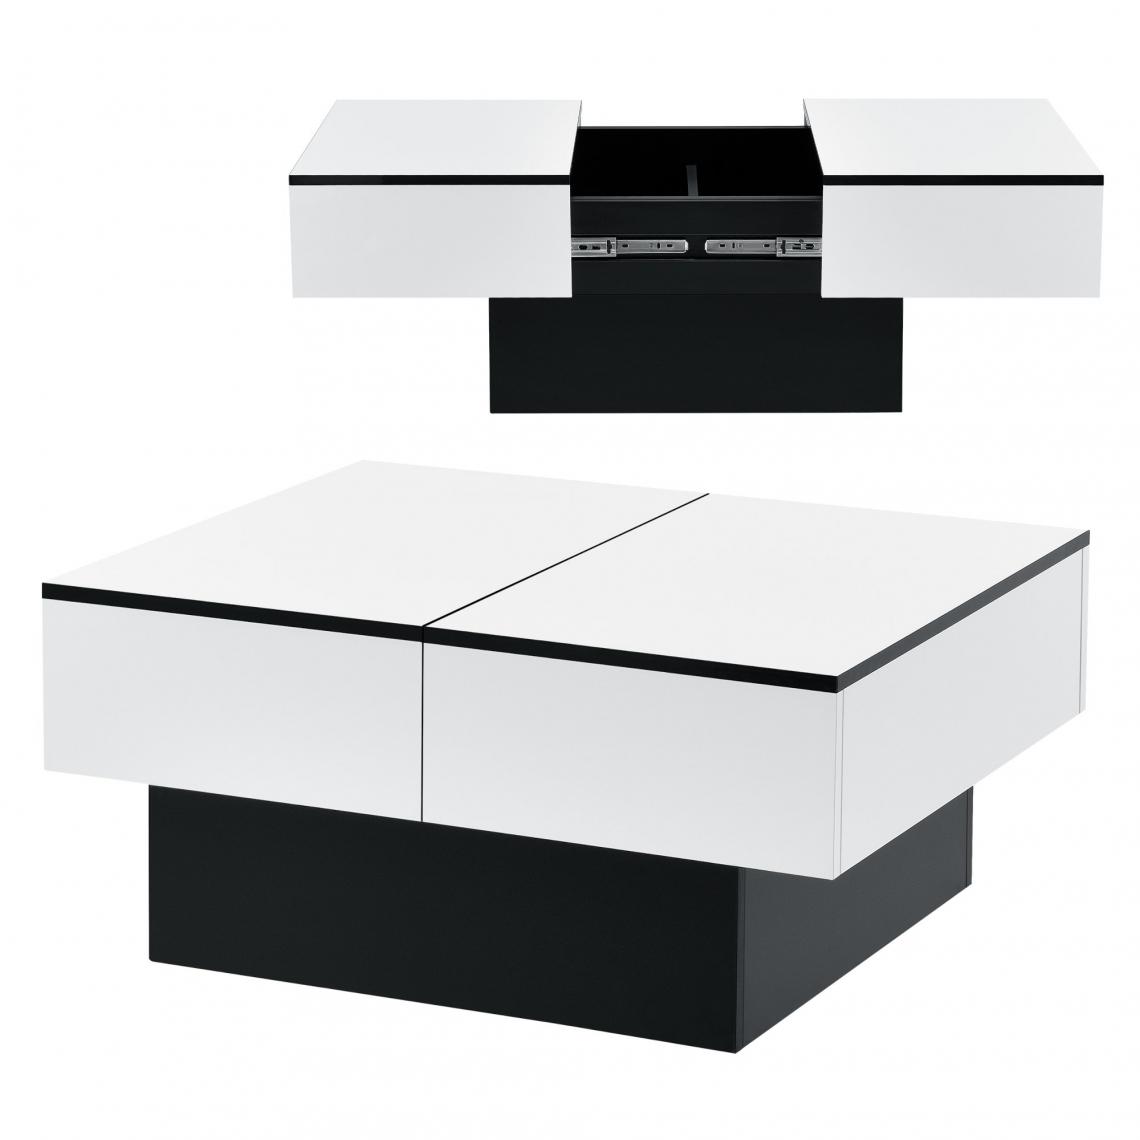 Helloshop26 - Table basse de salon rangement panneau de particules 80 cm noir blanc 03_0006150 - Tables basses